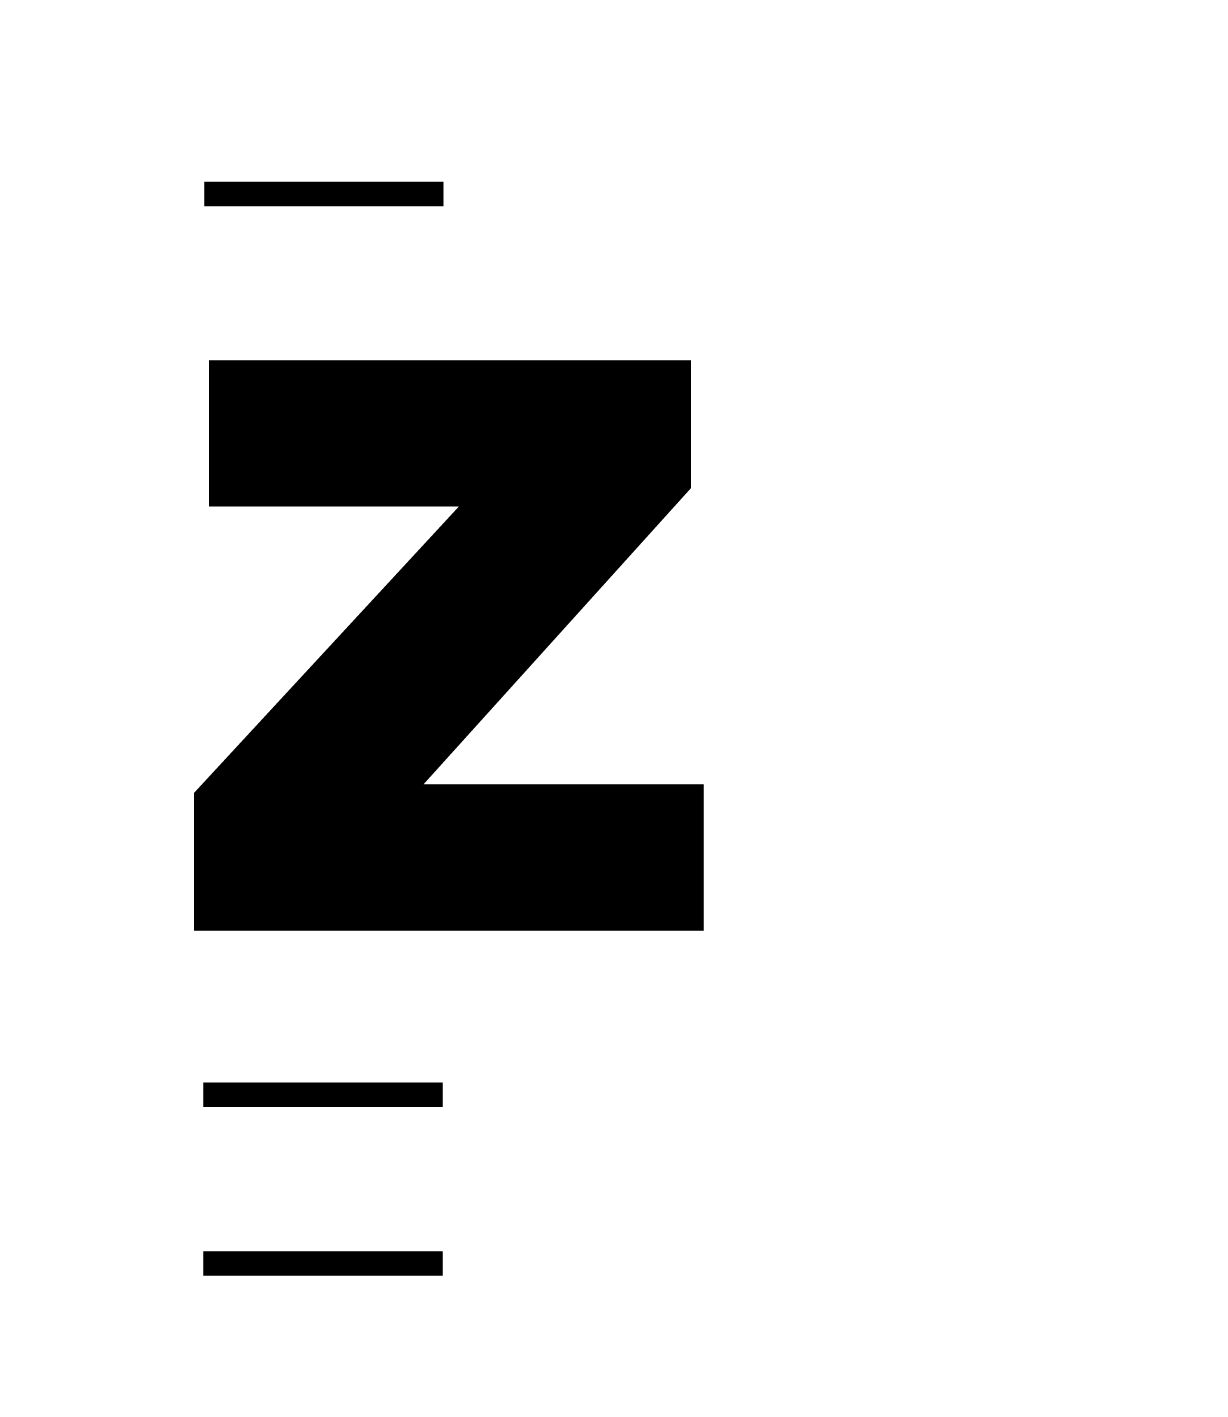 2018_zhdk_kompakt-logo_schwarz_gr